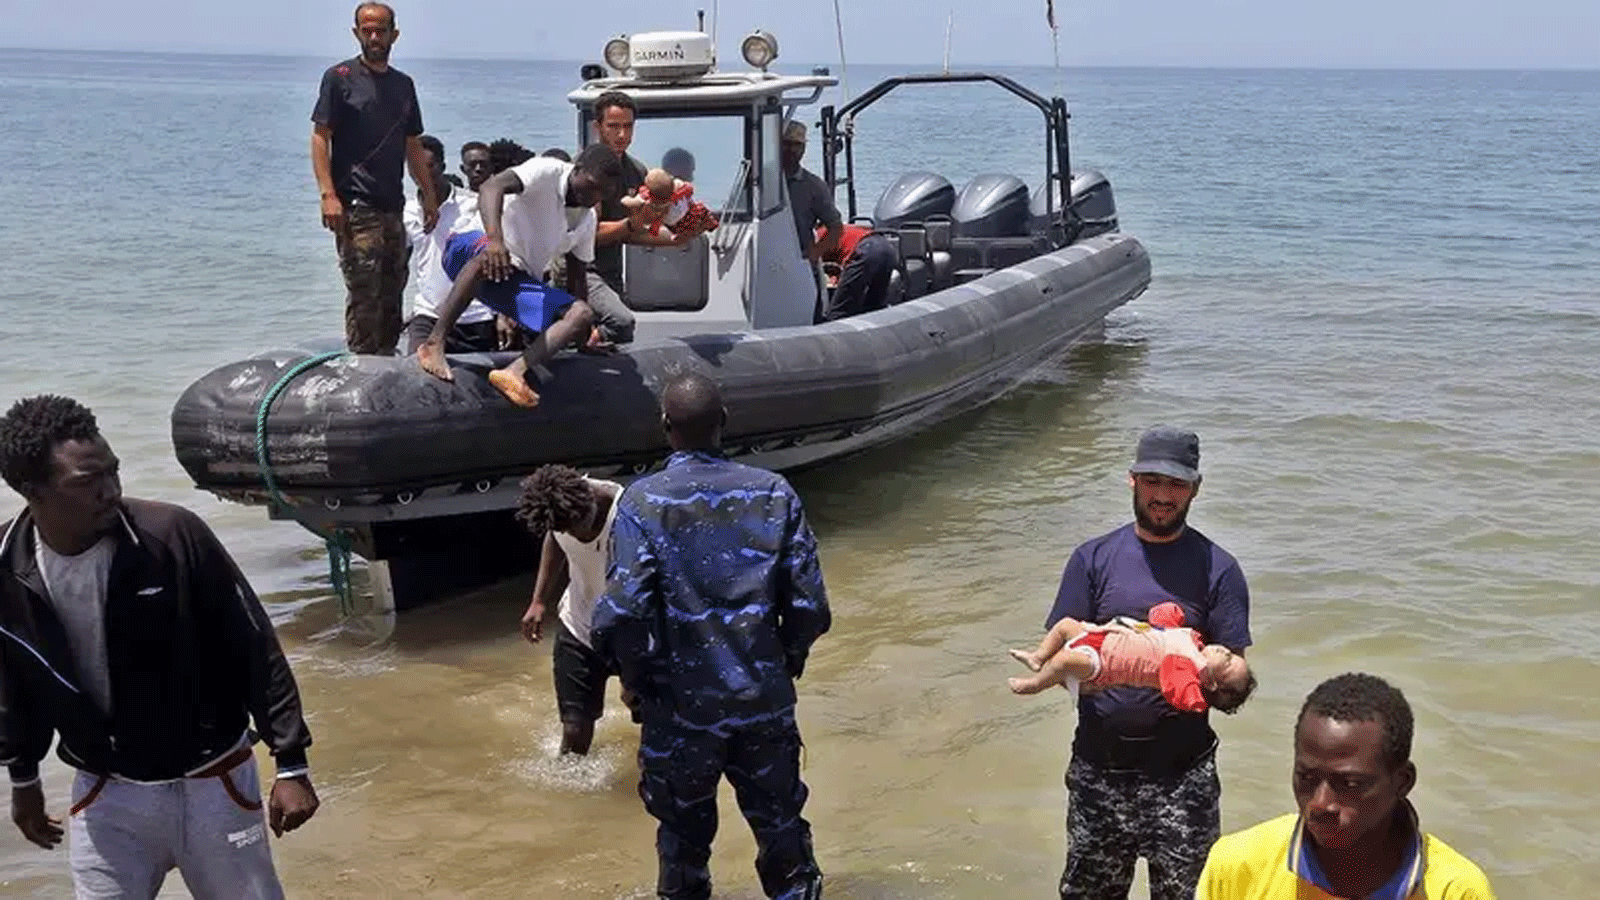 صورة لأفراد من قوات الأمن الليبية يحملون أطفال كمهاجرين نجوا من غرق زورق مطاطي قابل للنفخ قبالة سواحل ليبيا